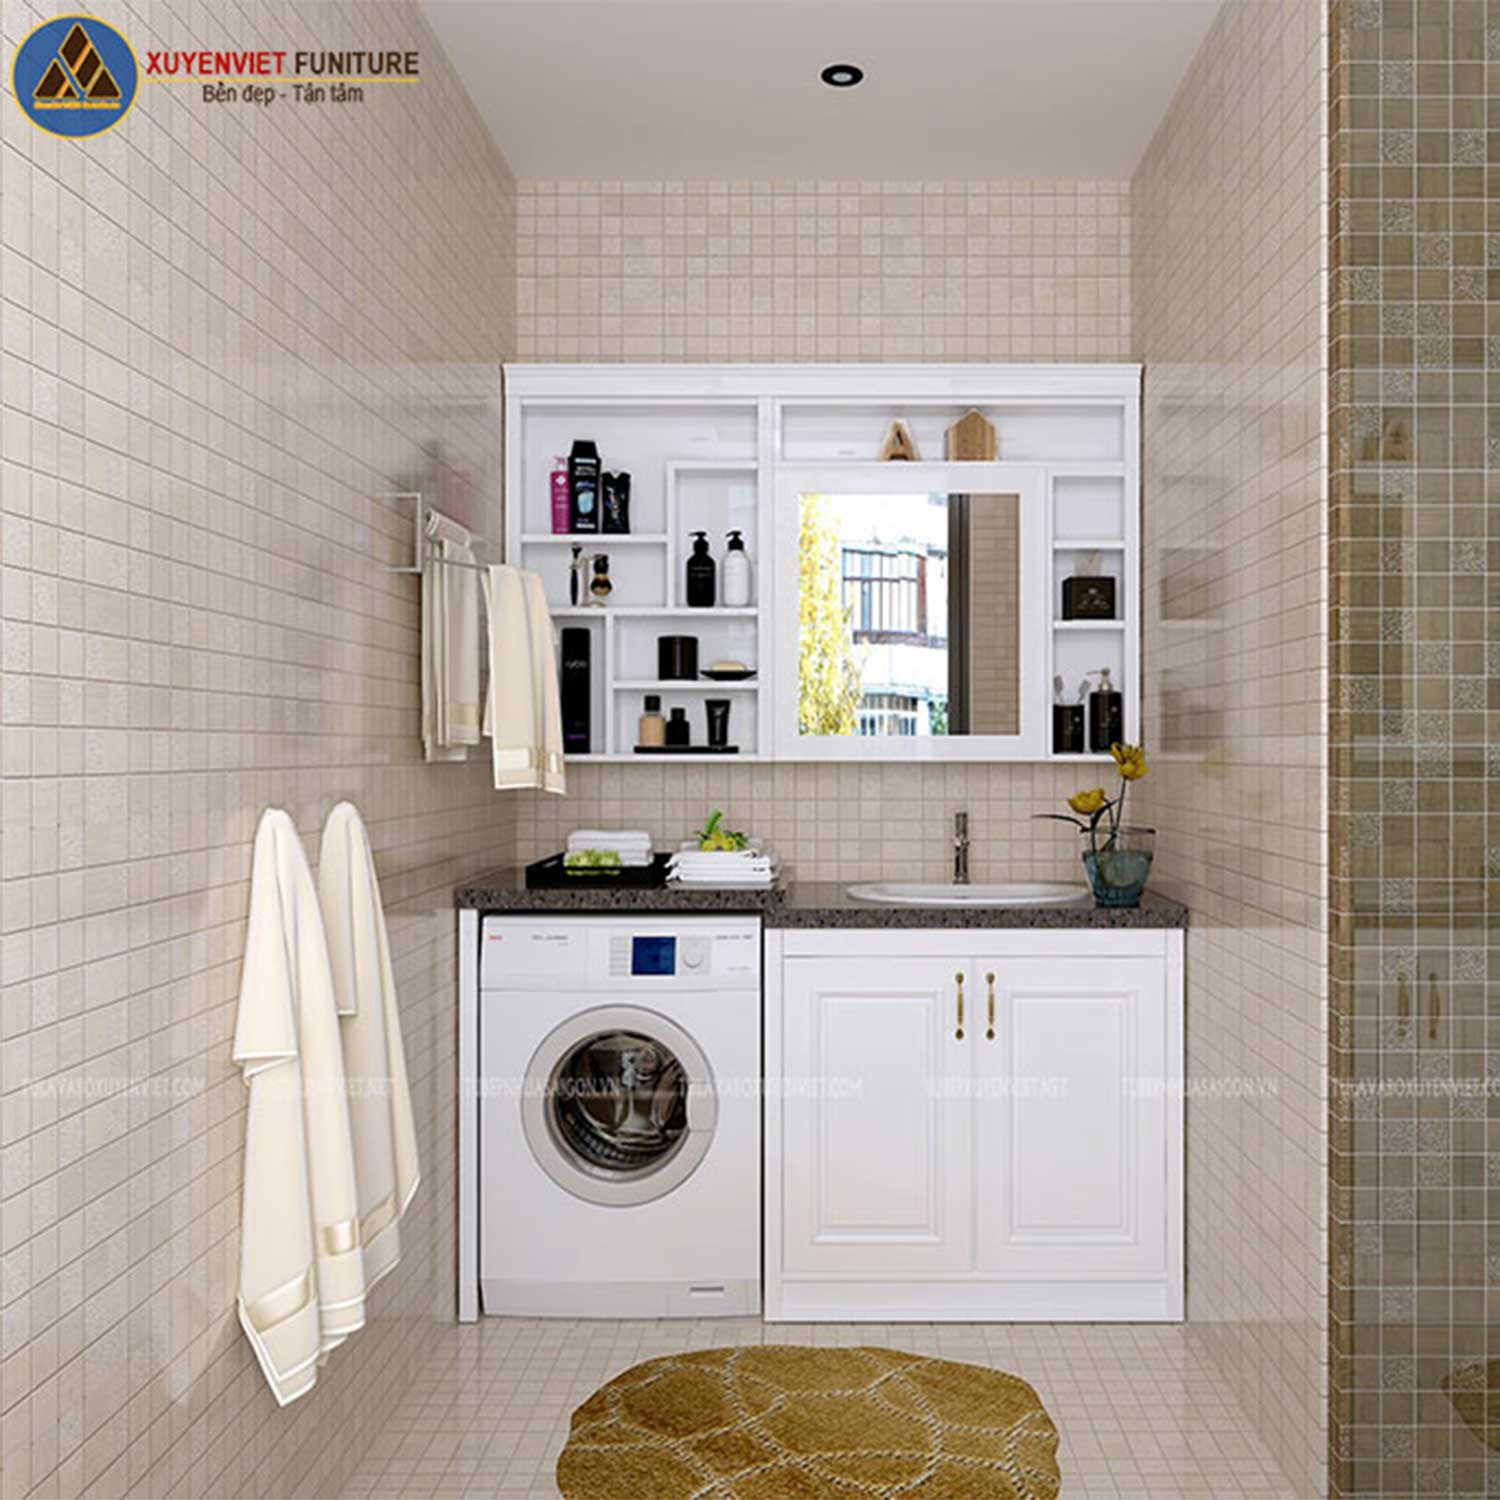 Tủ lavabo cổ điển kết hợp tủ máy giặt phù hợp với không gian phòng tắm có diện tích rộng